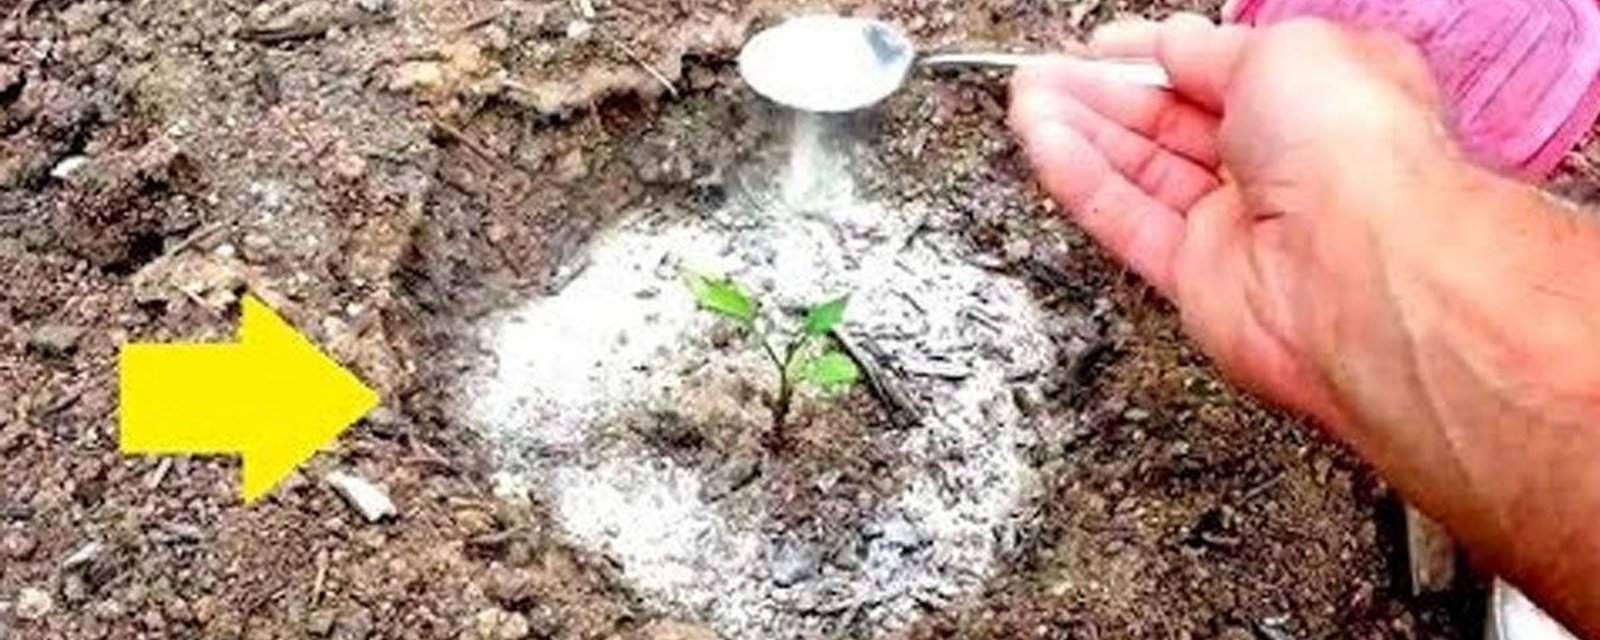 15 utilisations insoupçonnées du bicarbonate de soude pour le jardinage